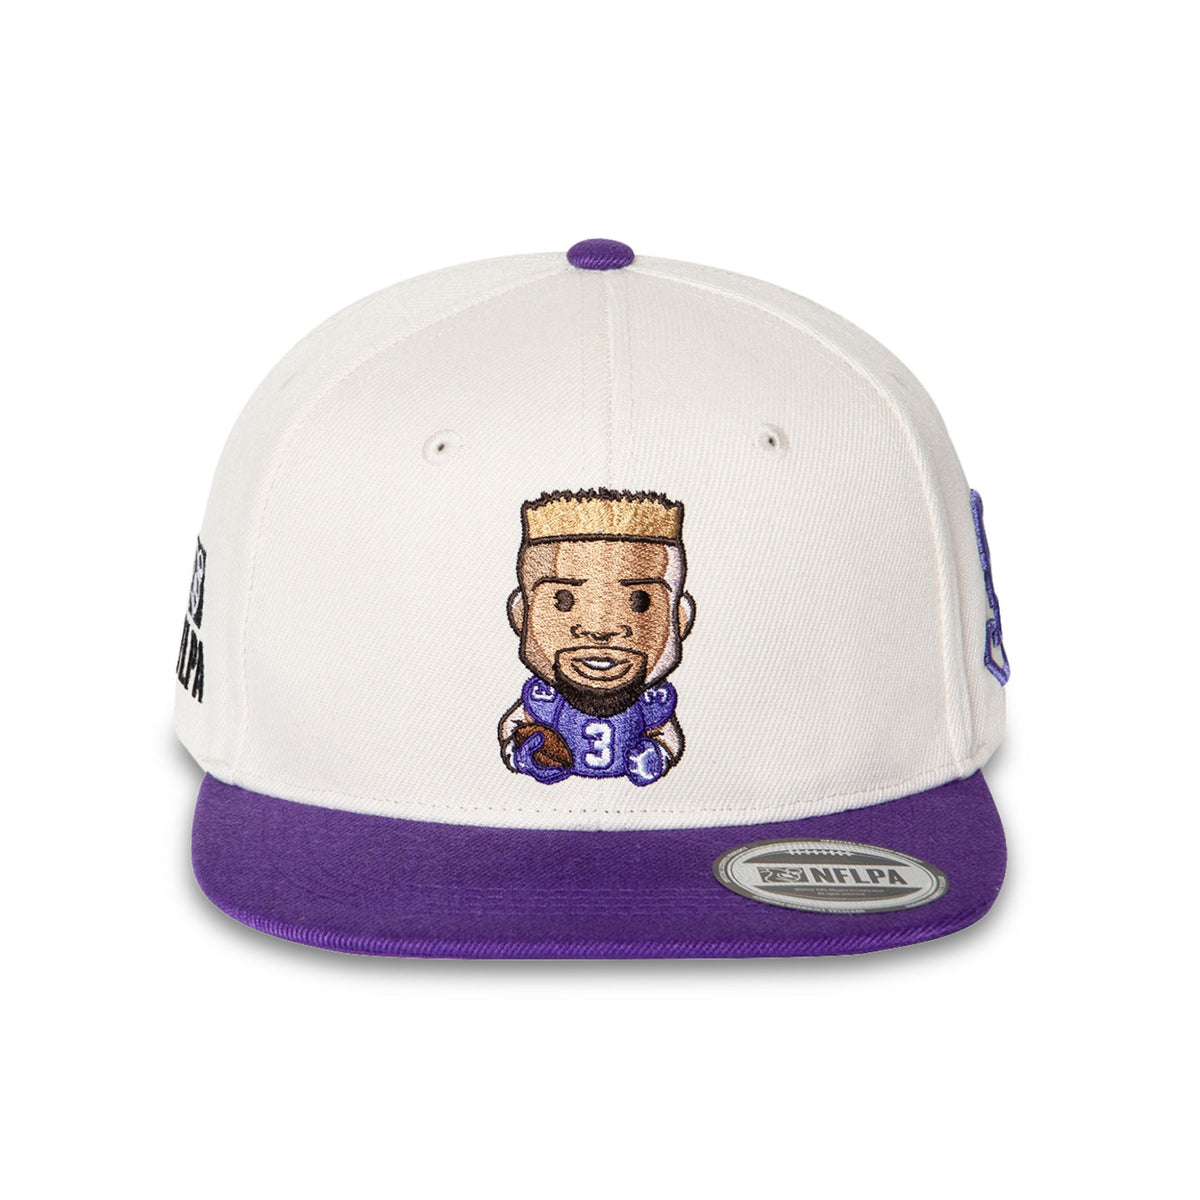 Odel Beckham Jr. (Ravens) Emoji Snapback Cap